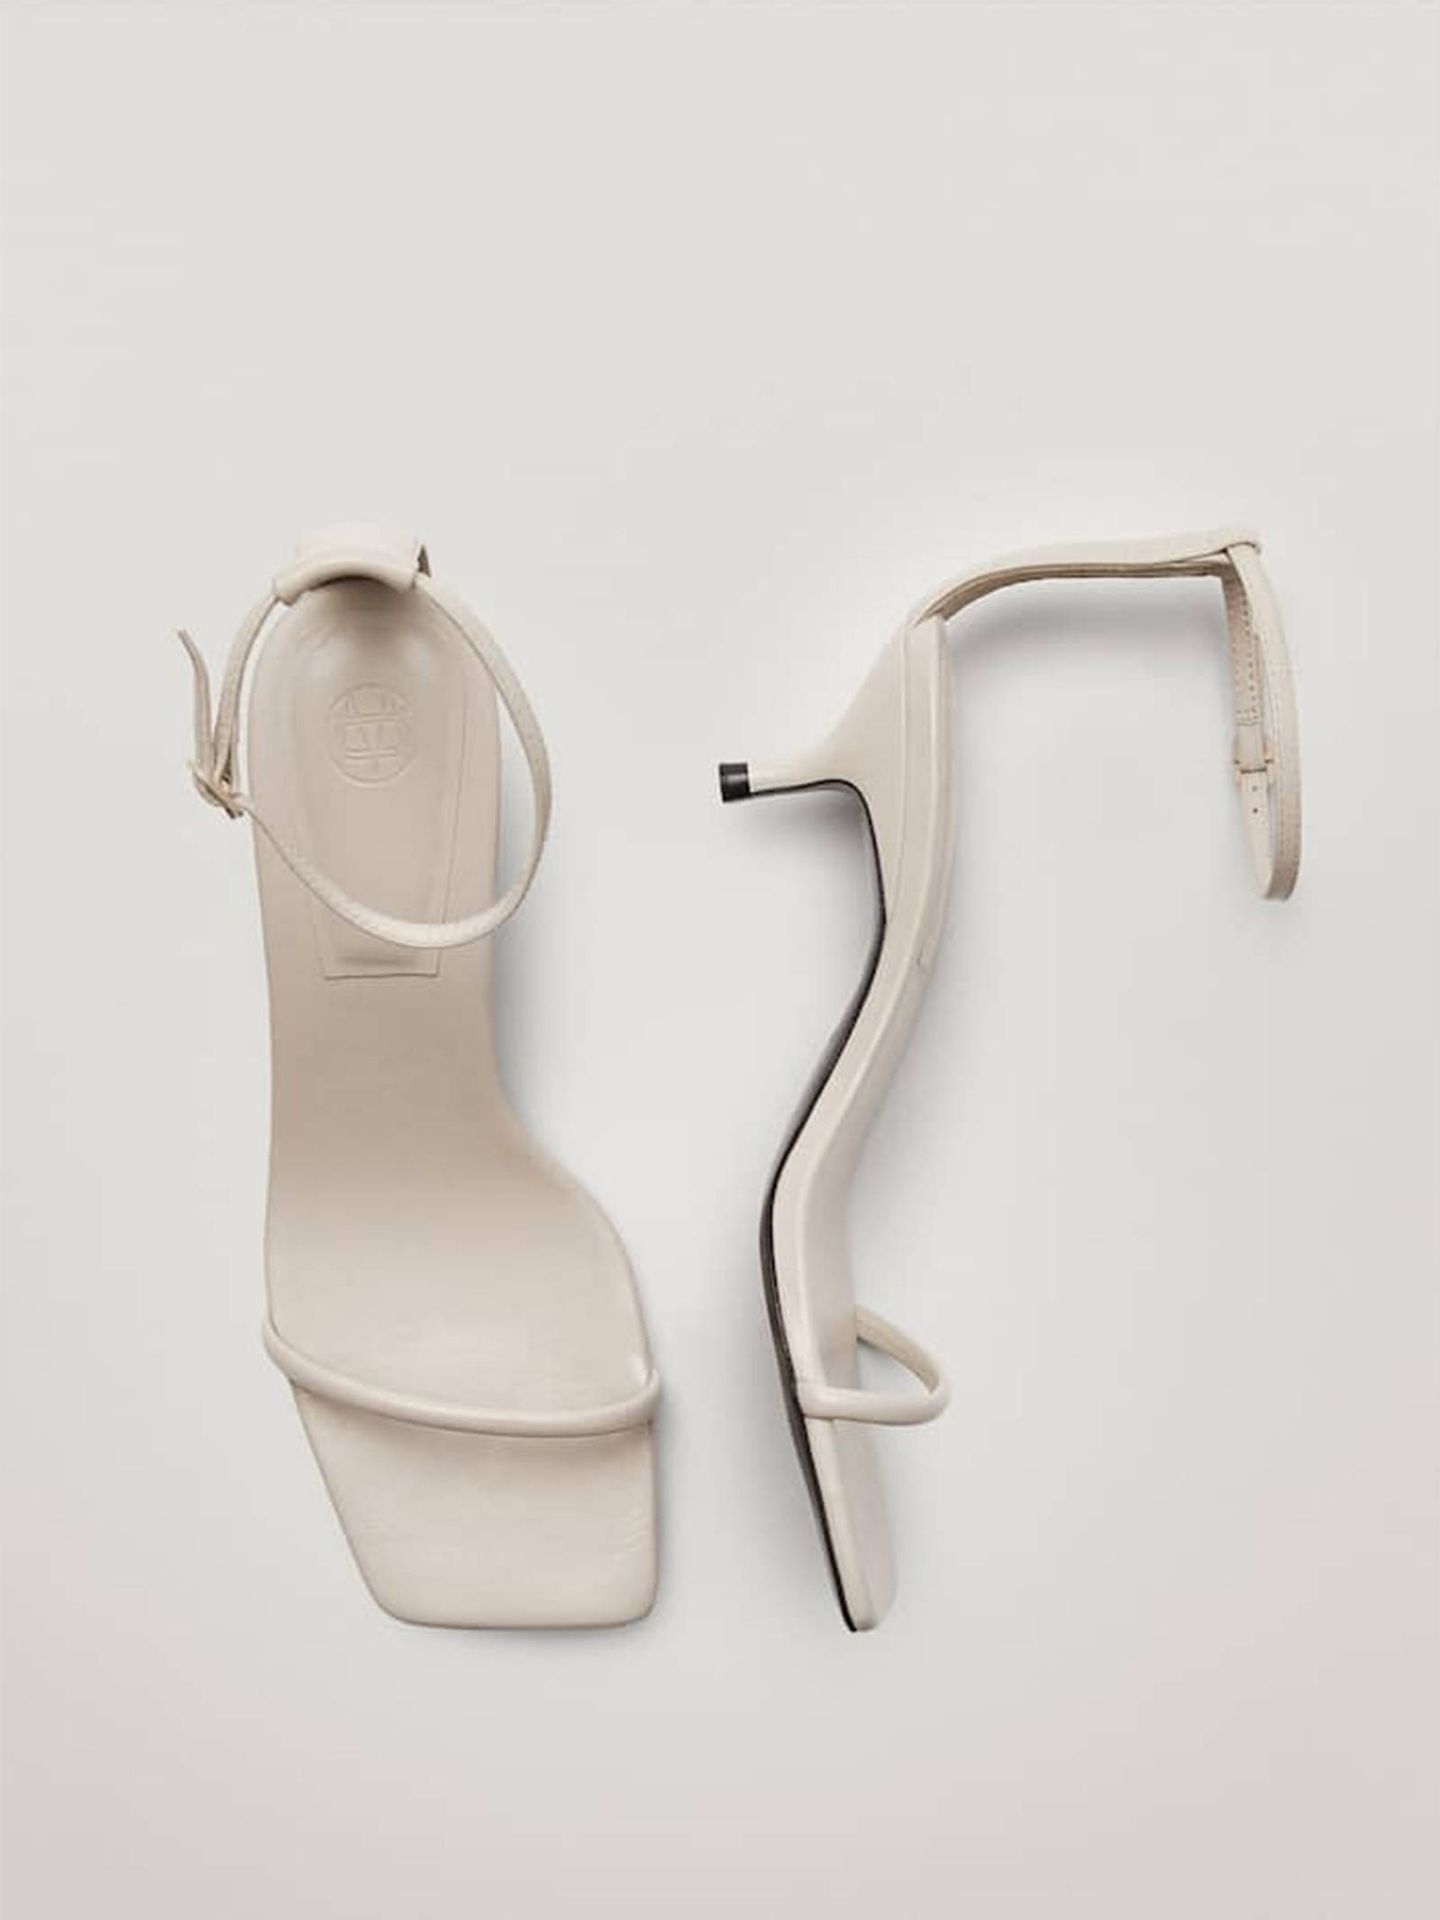 Sandalias blancas de Massimo Dutti. (Cortesía)